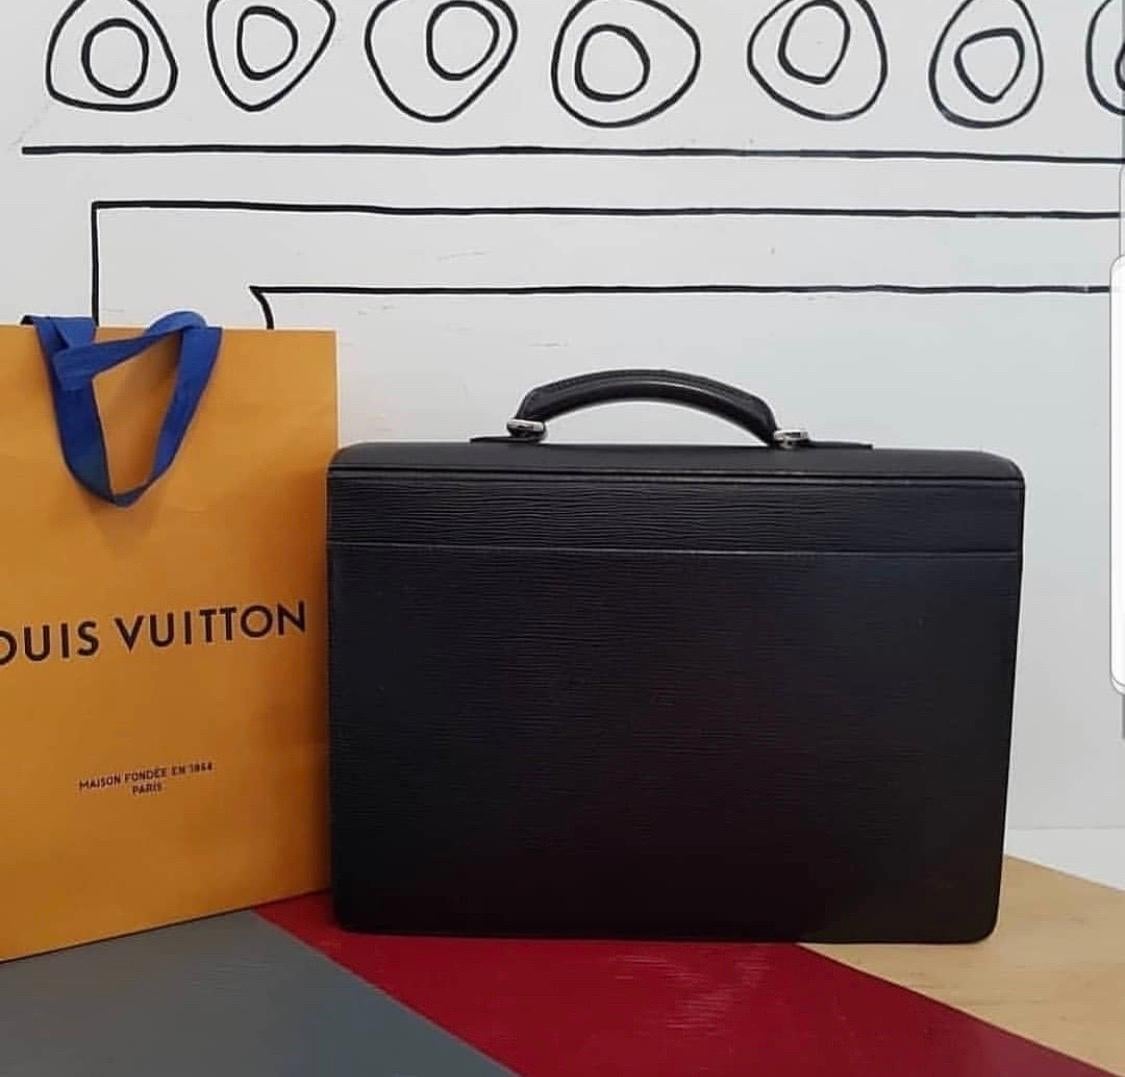 Cette mallette classique de Louis Vuitton apporte une toute nouvelle perspective au répertoire du bureau. Cette mallette Robusto à 2 compartiments est fabriquée en cuir Epi noir. Le sac est doté d'un design subtil, d'une poignée supérieure unique et